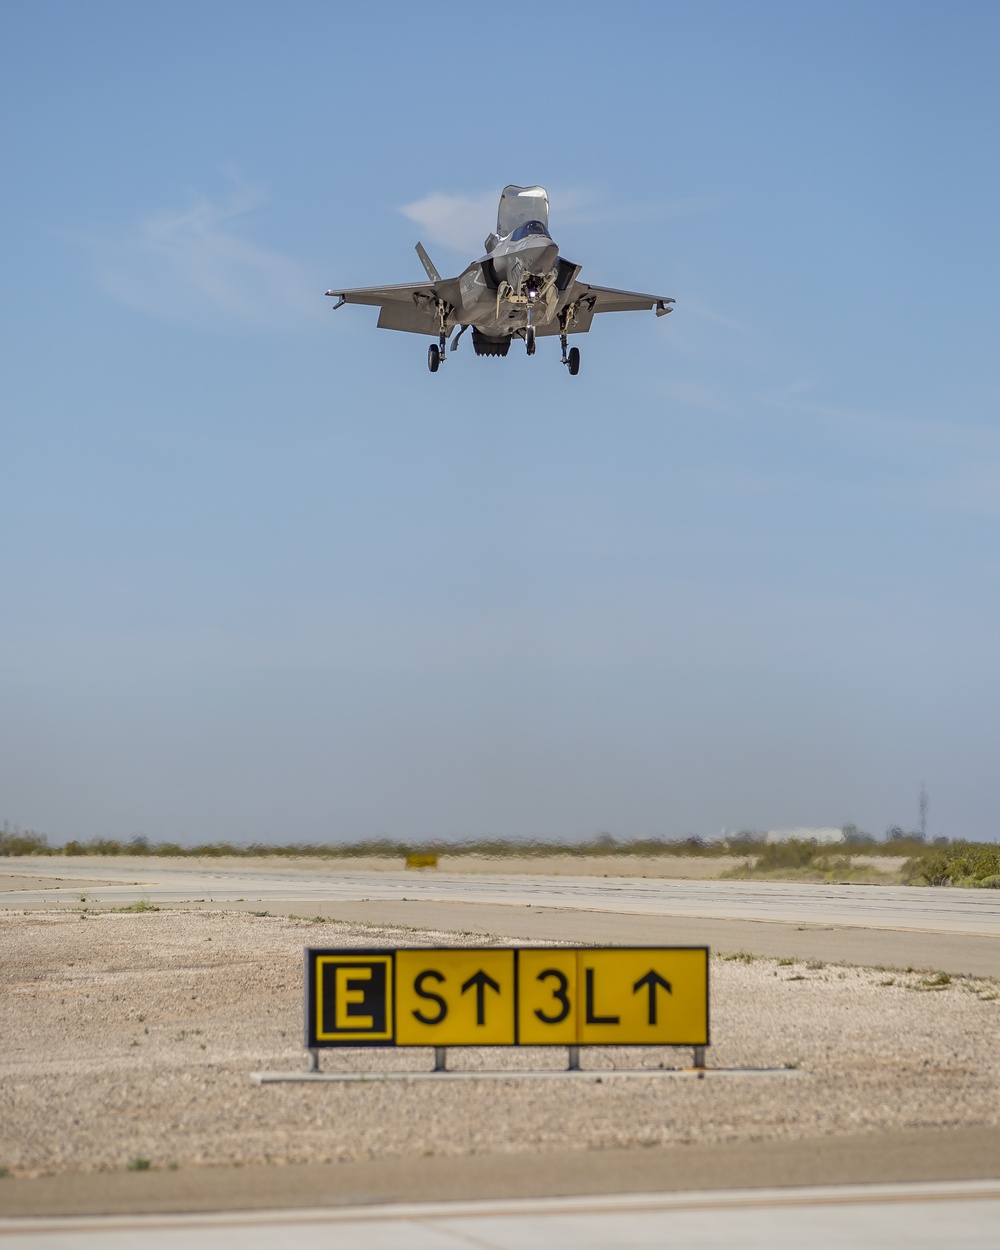 Narrow road expeditionary landing training at MCAS Yuma